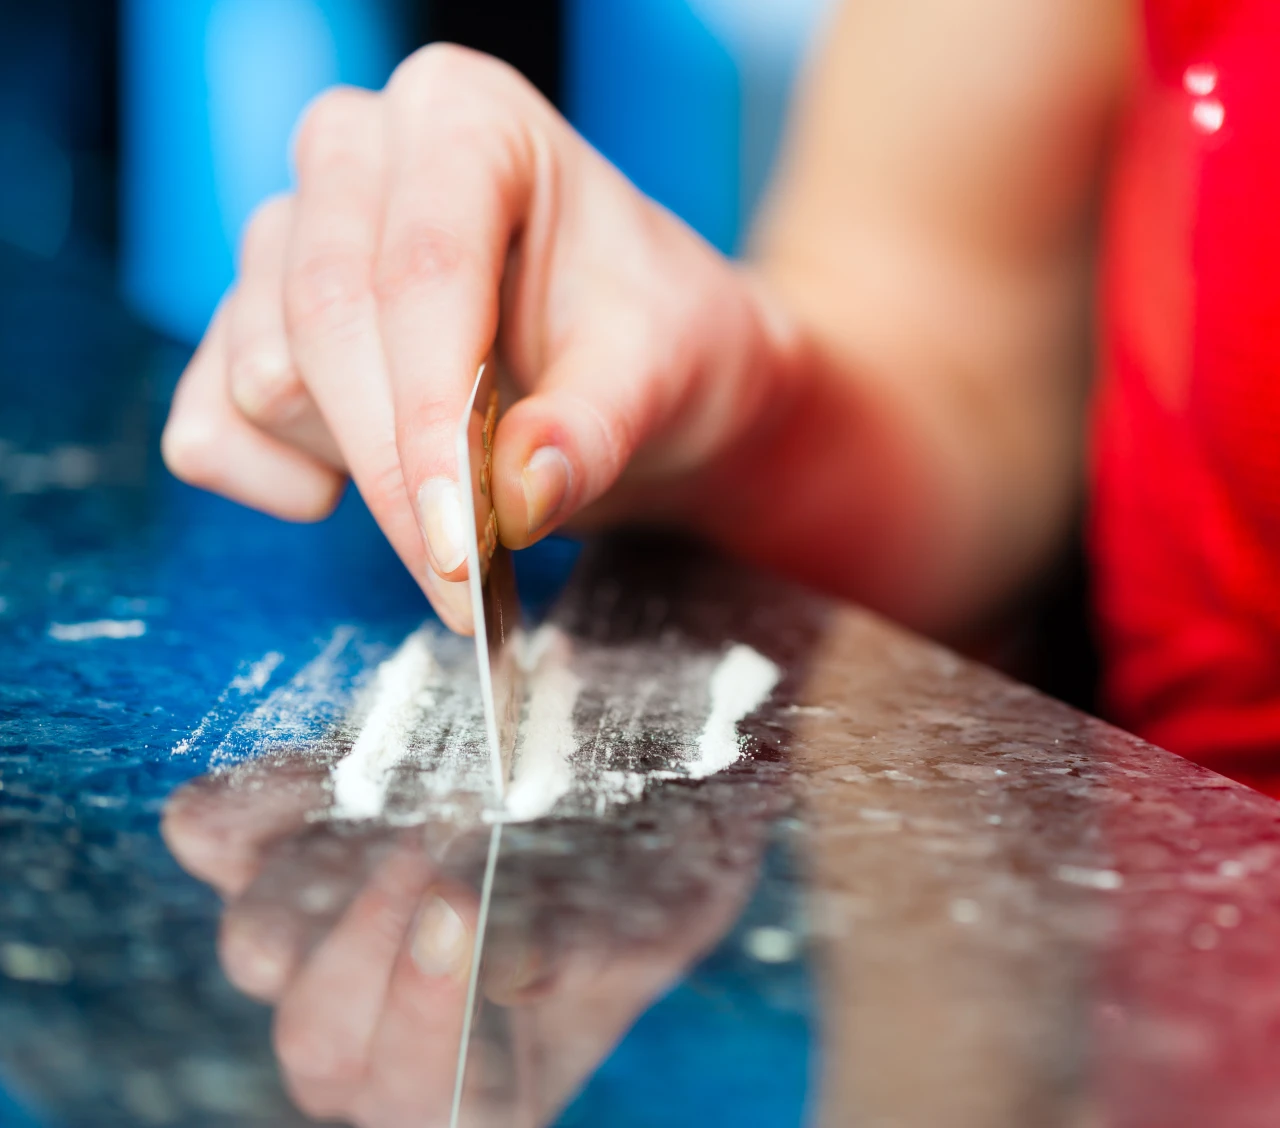 Vrouw legt lijntjes coke op tafel met bankpas omdat ze een cocaineverslaving heeft.